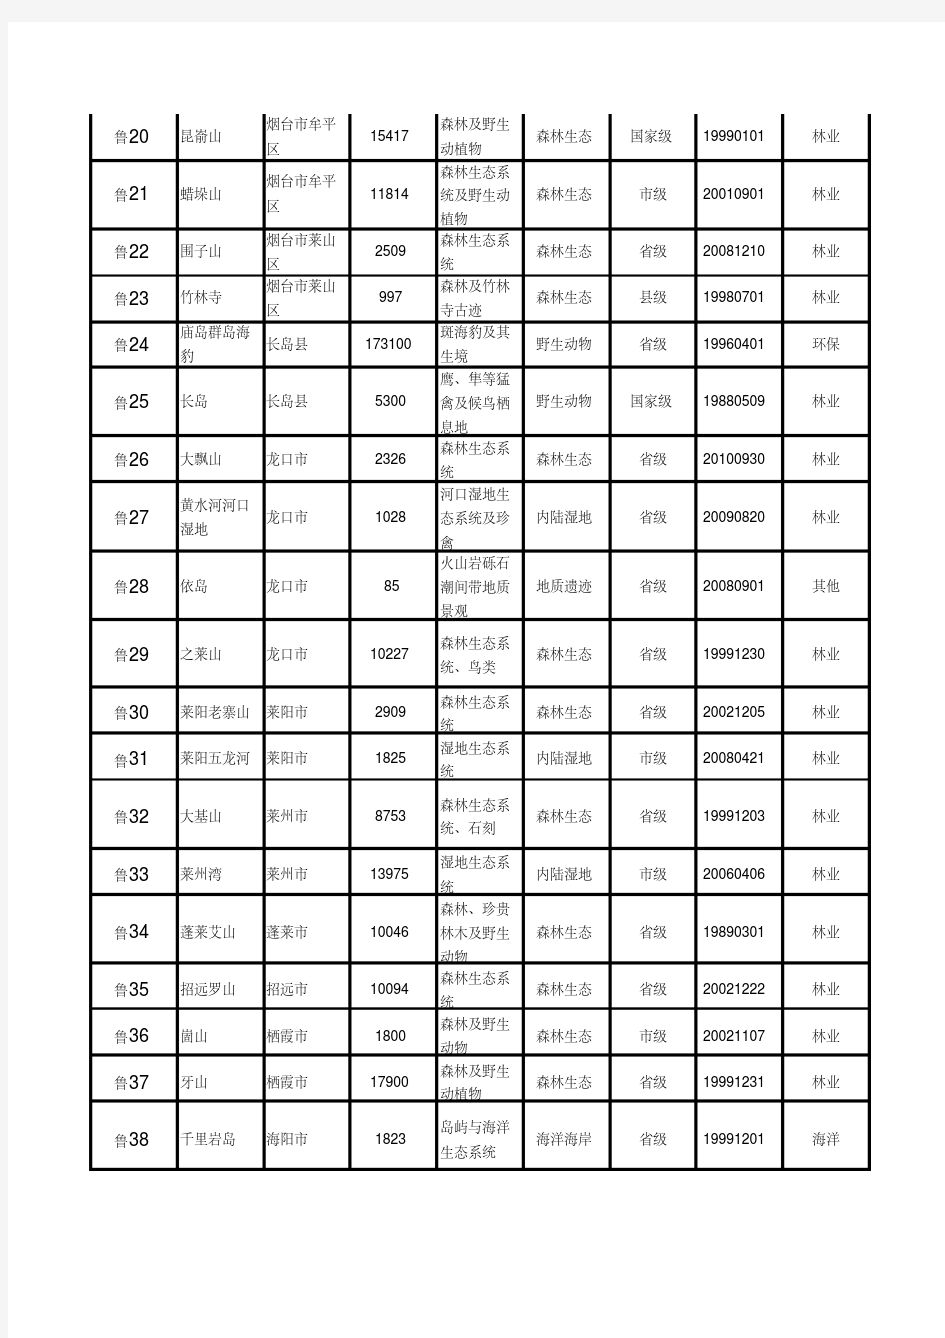 山东省自然保护区名录(截至2011年底)